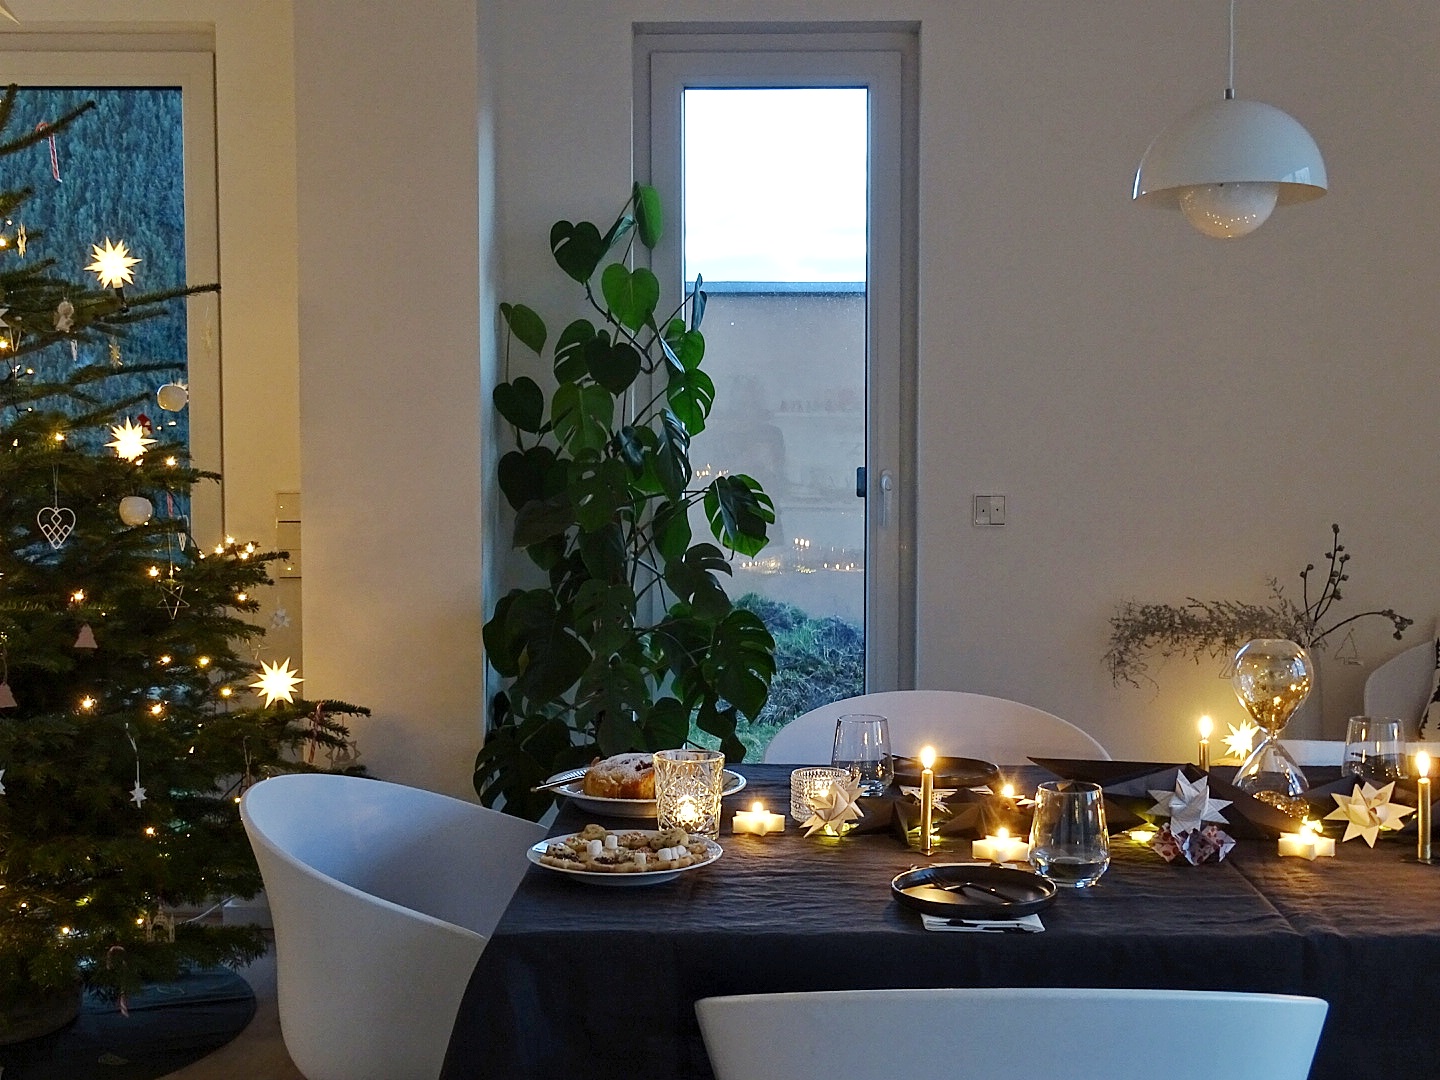 Weihnachtliche Tischdeko-Idee 'In sternklarer Nacht' mit Schwarz, Gold, vielen Kerzen & Sternen | mammilade.com